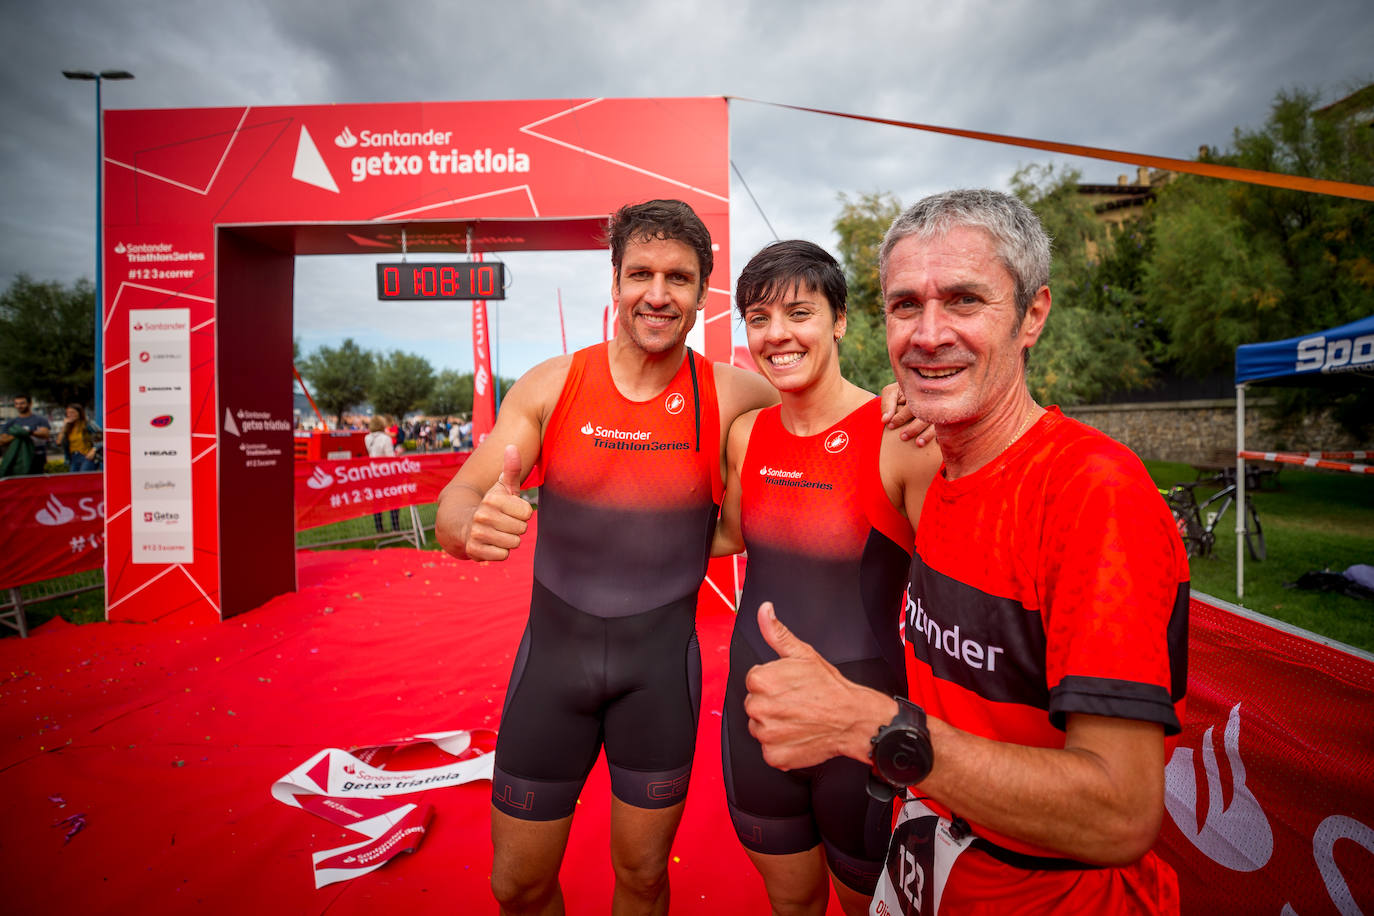 Fotos: Martín Fiz gana el Santander Getxo Triatloia junto a Eider Fuentes y Eneko van Horenbeke